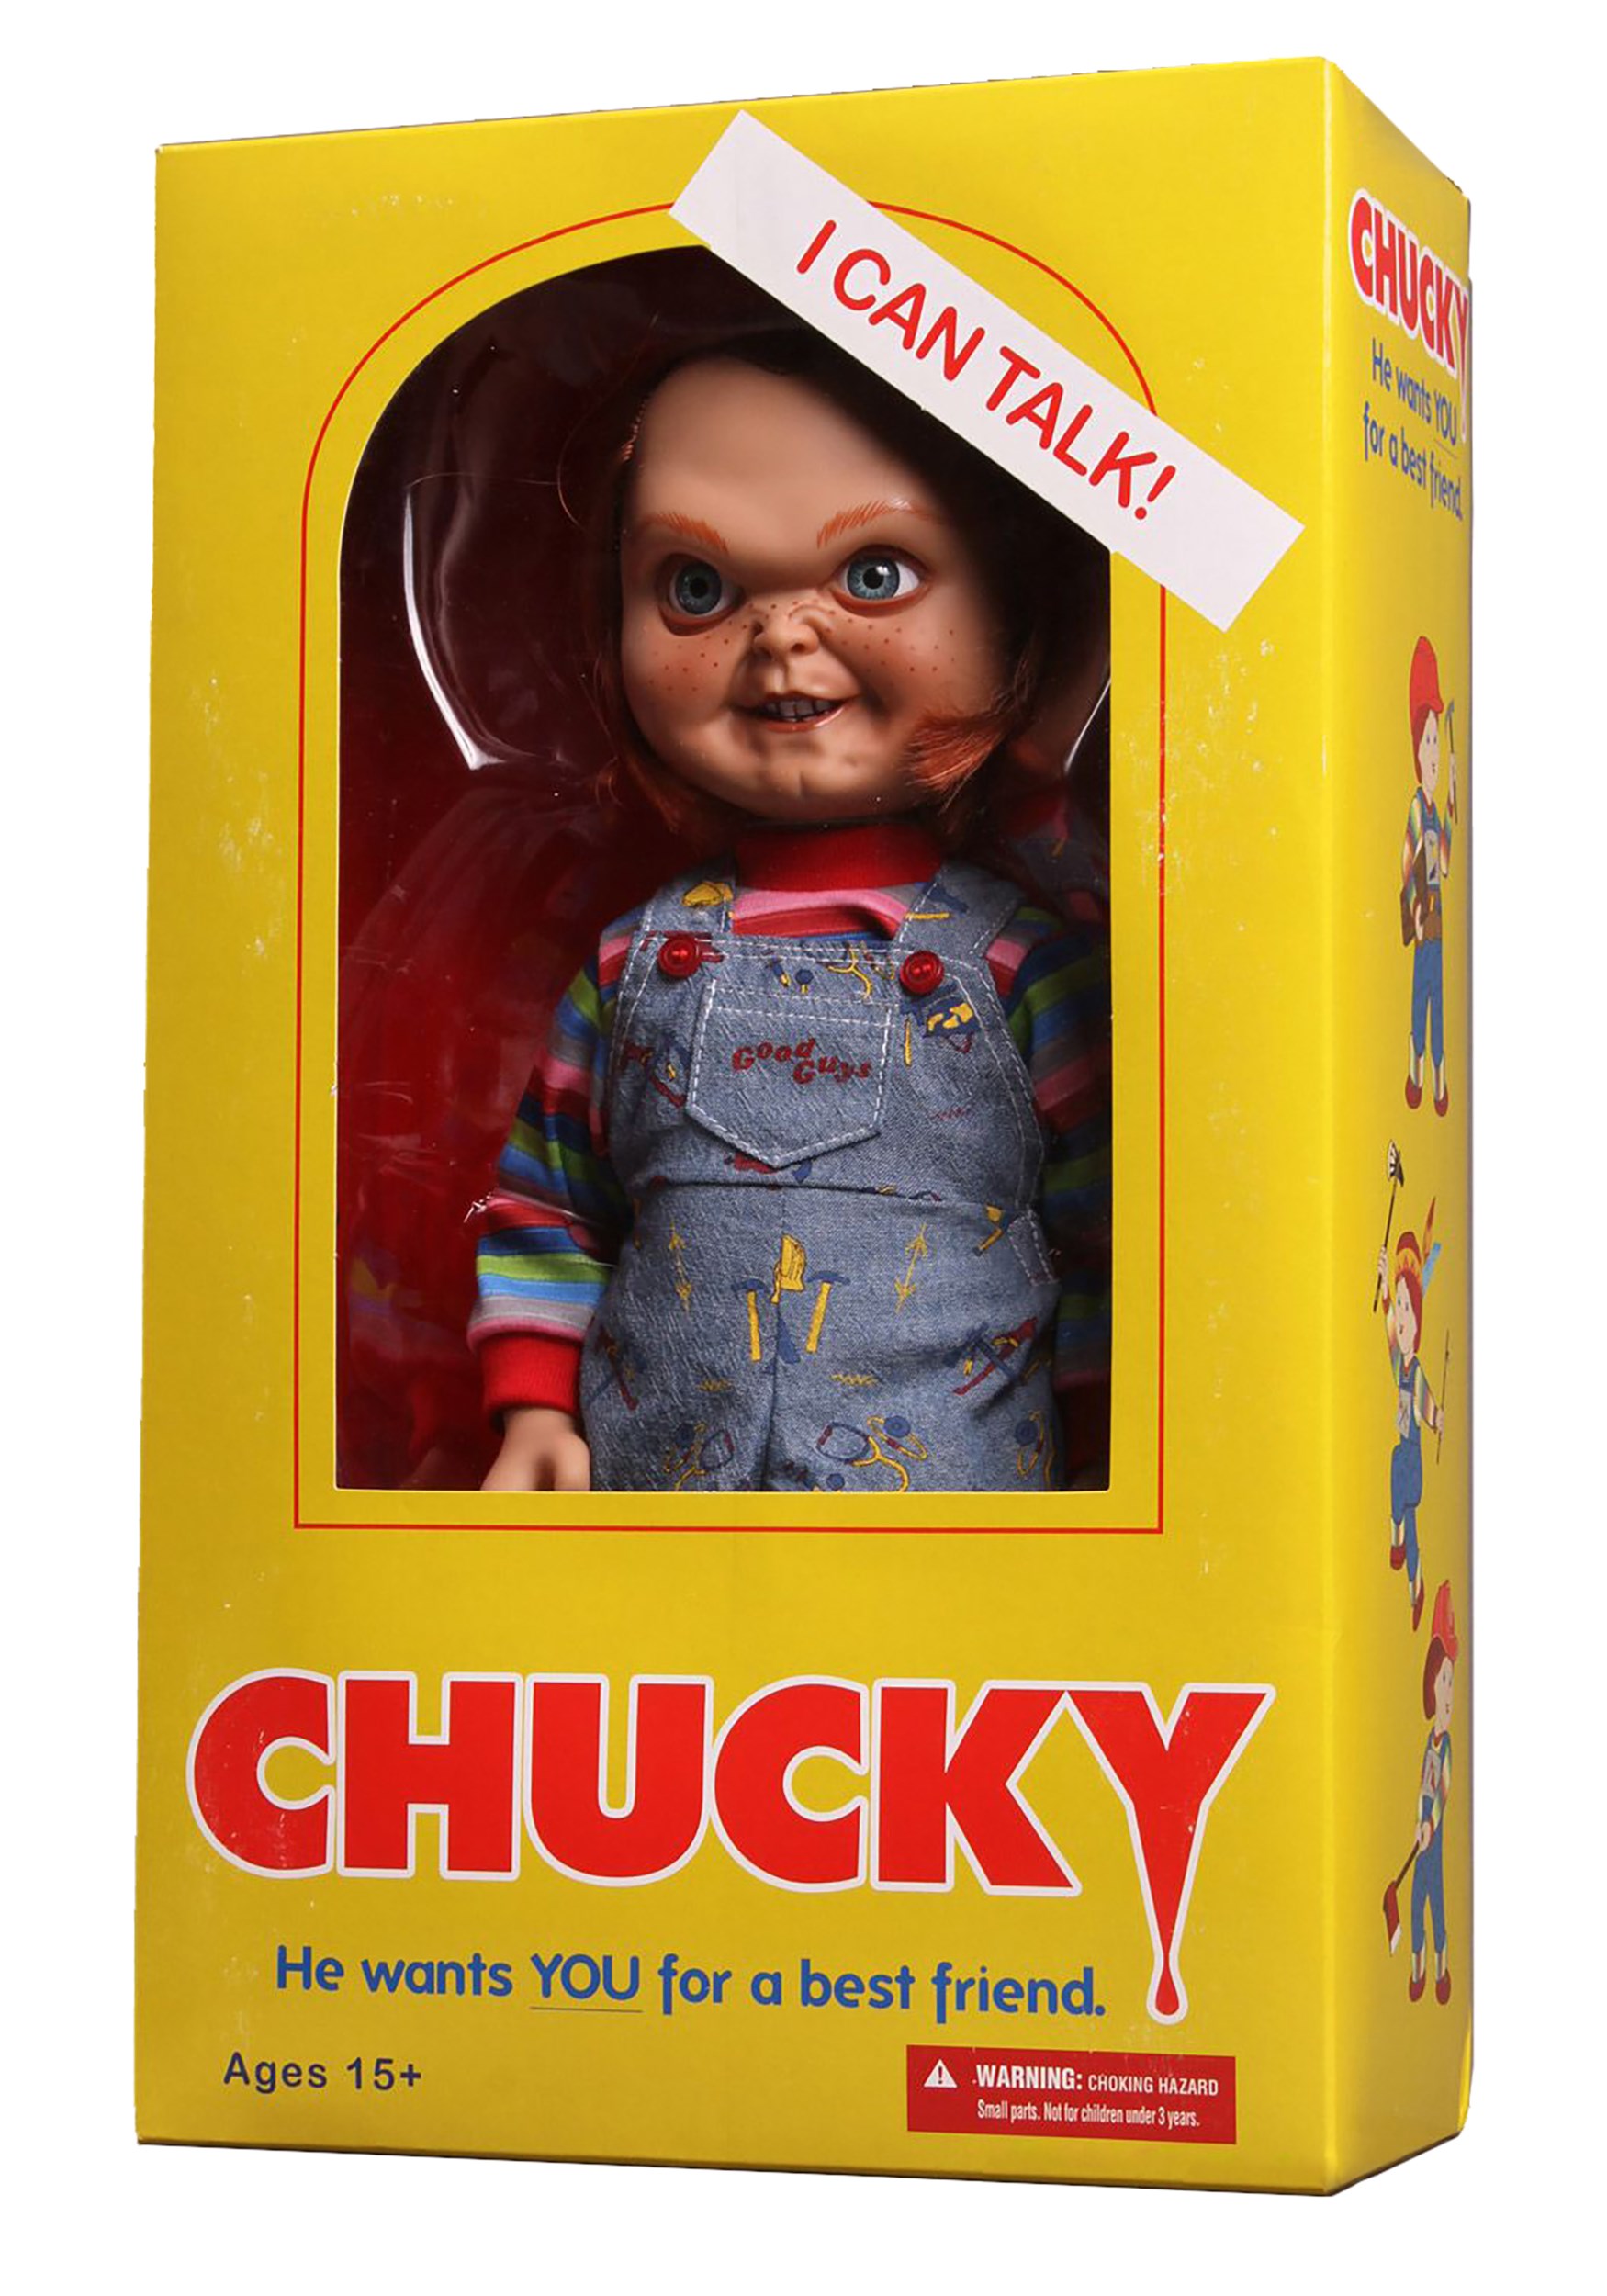 where can i buy a chucky good guy doll